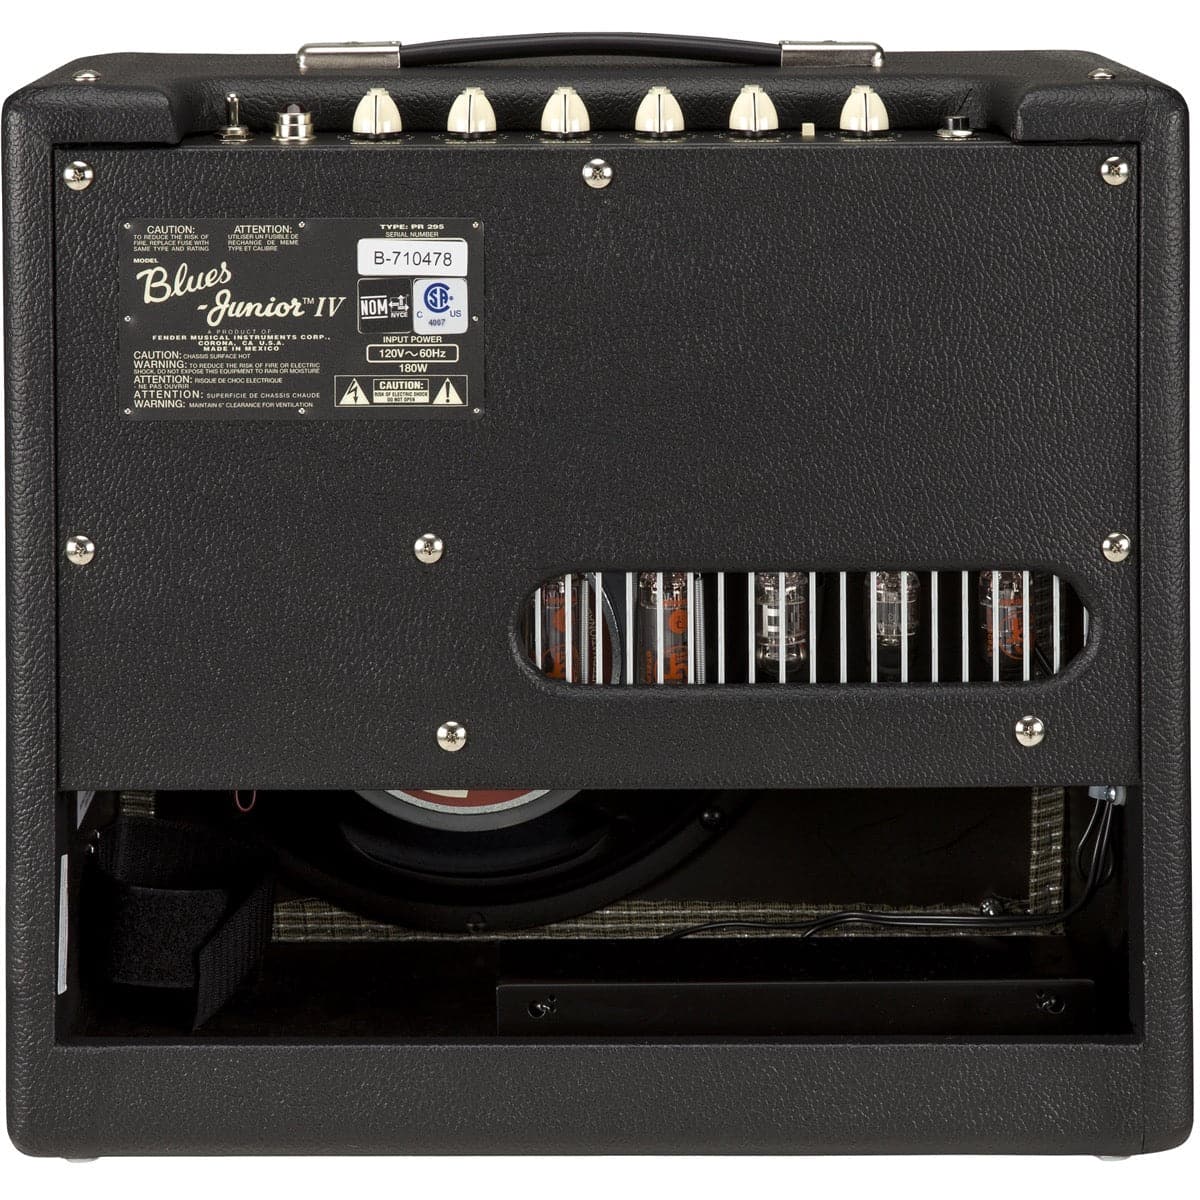 Fender Blues Junior IV 15 Watt Valve Combo Amplifier Black